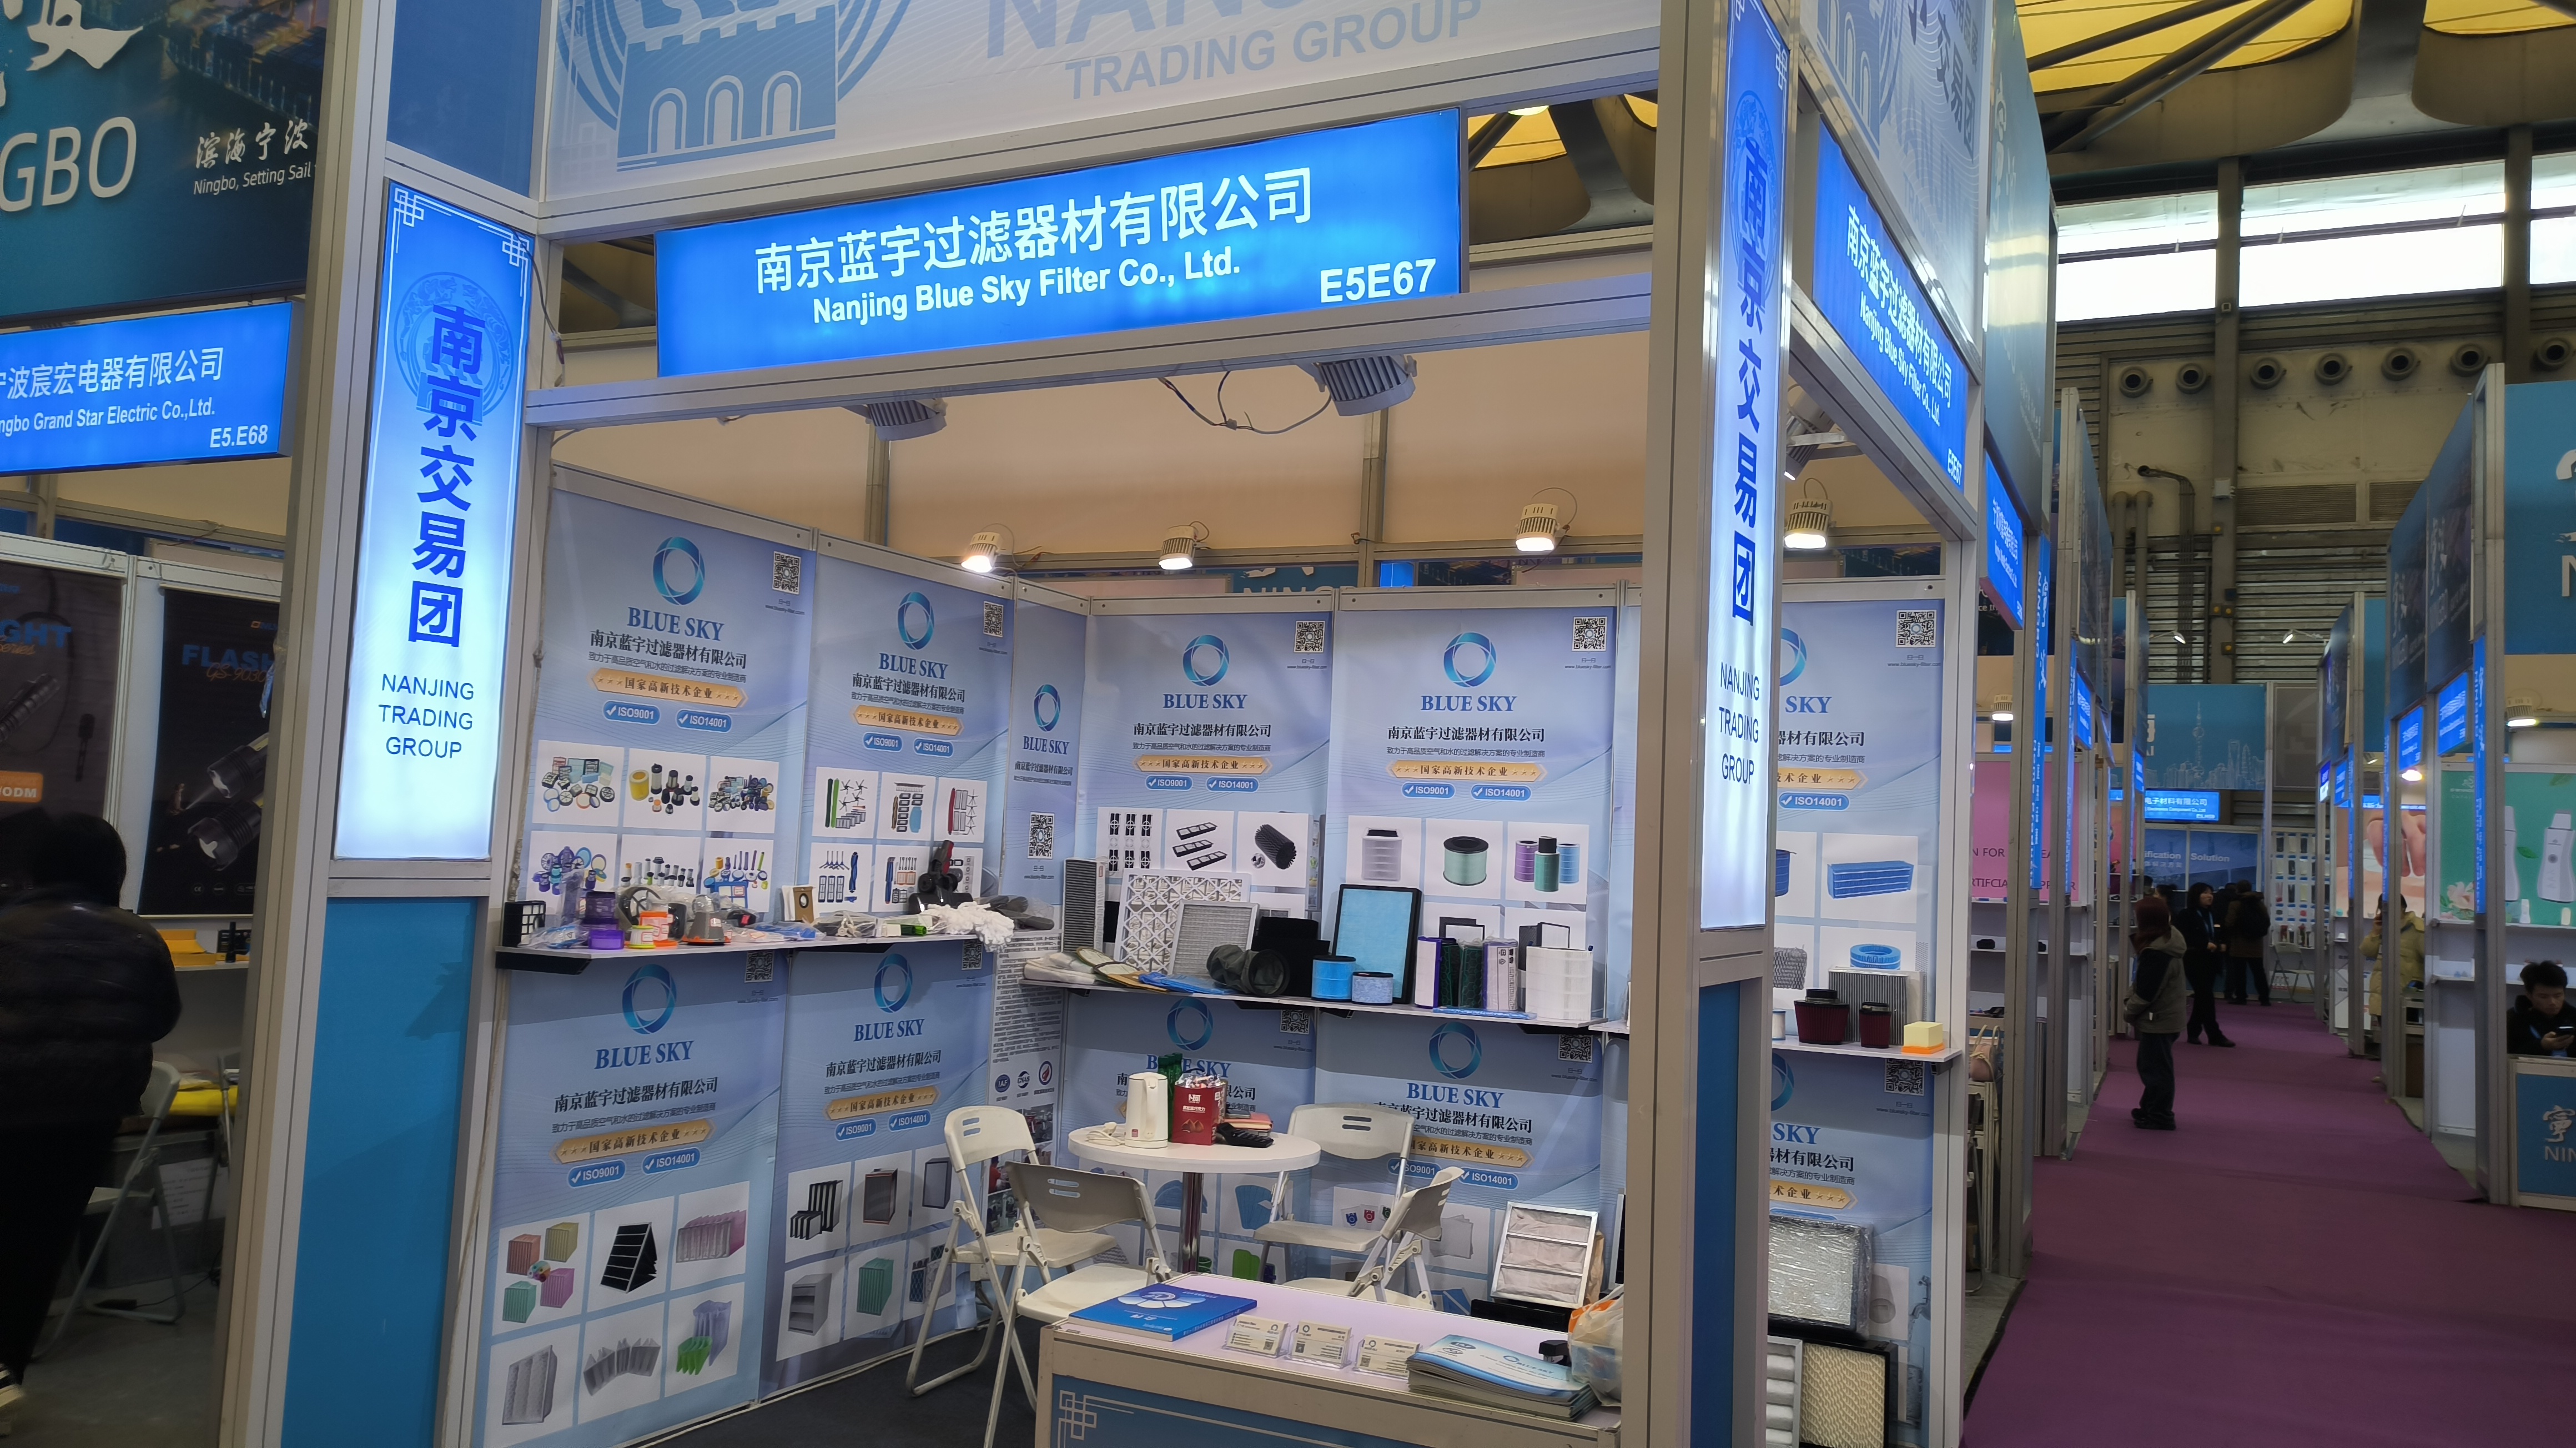 華東博覧会への参加: 南京藍天フィルター有限公司の機会と課題